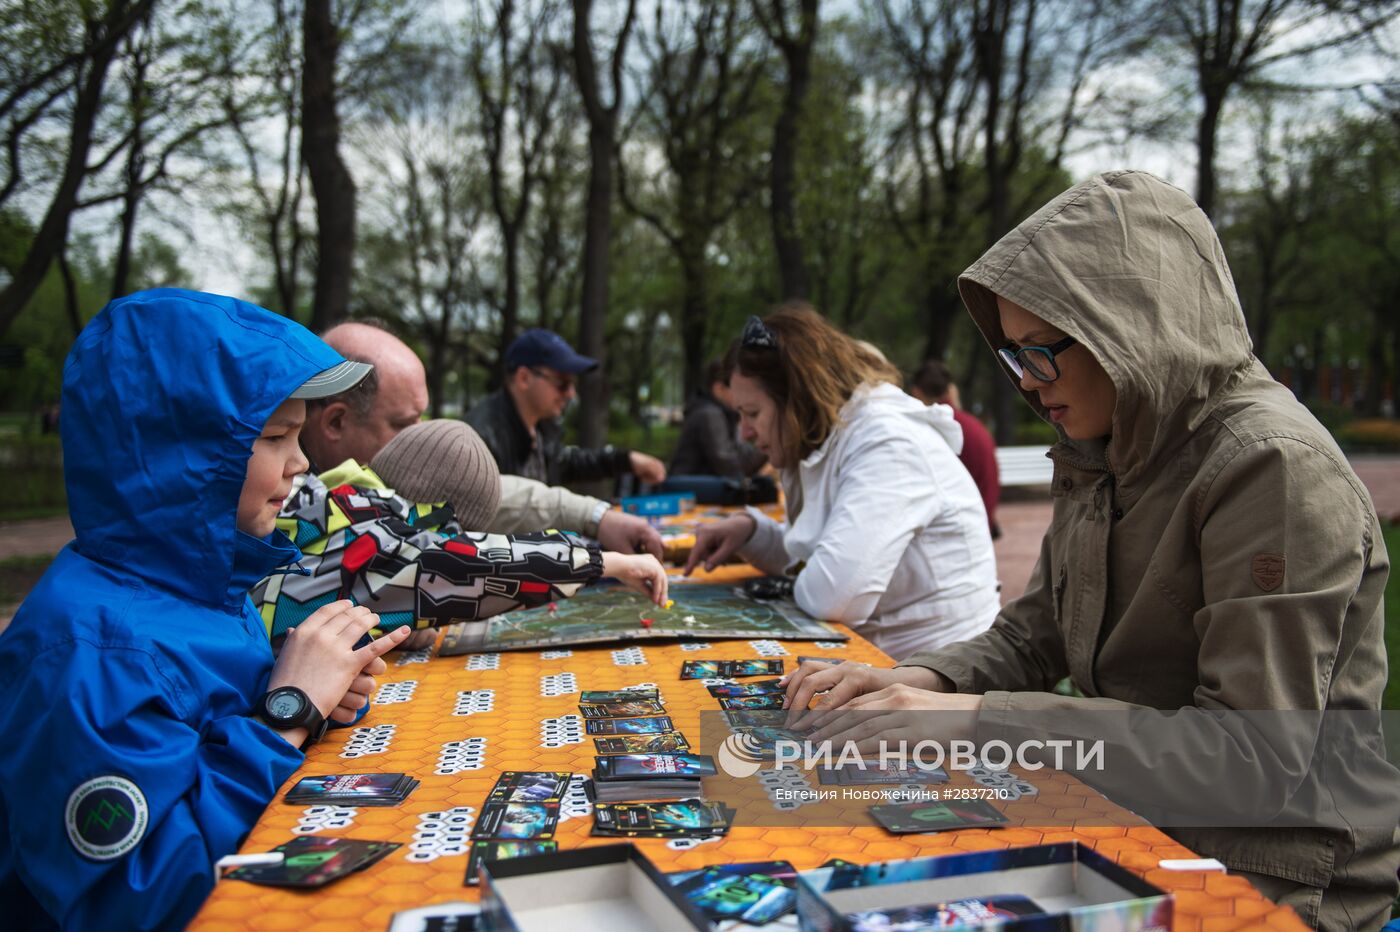 Открытие летнего сезона в московских парках